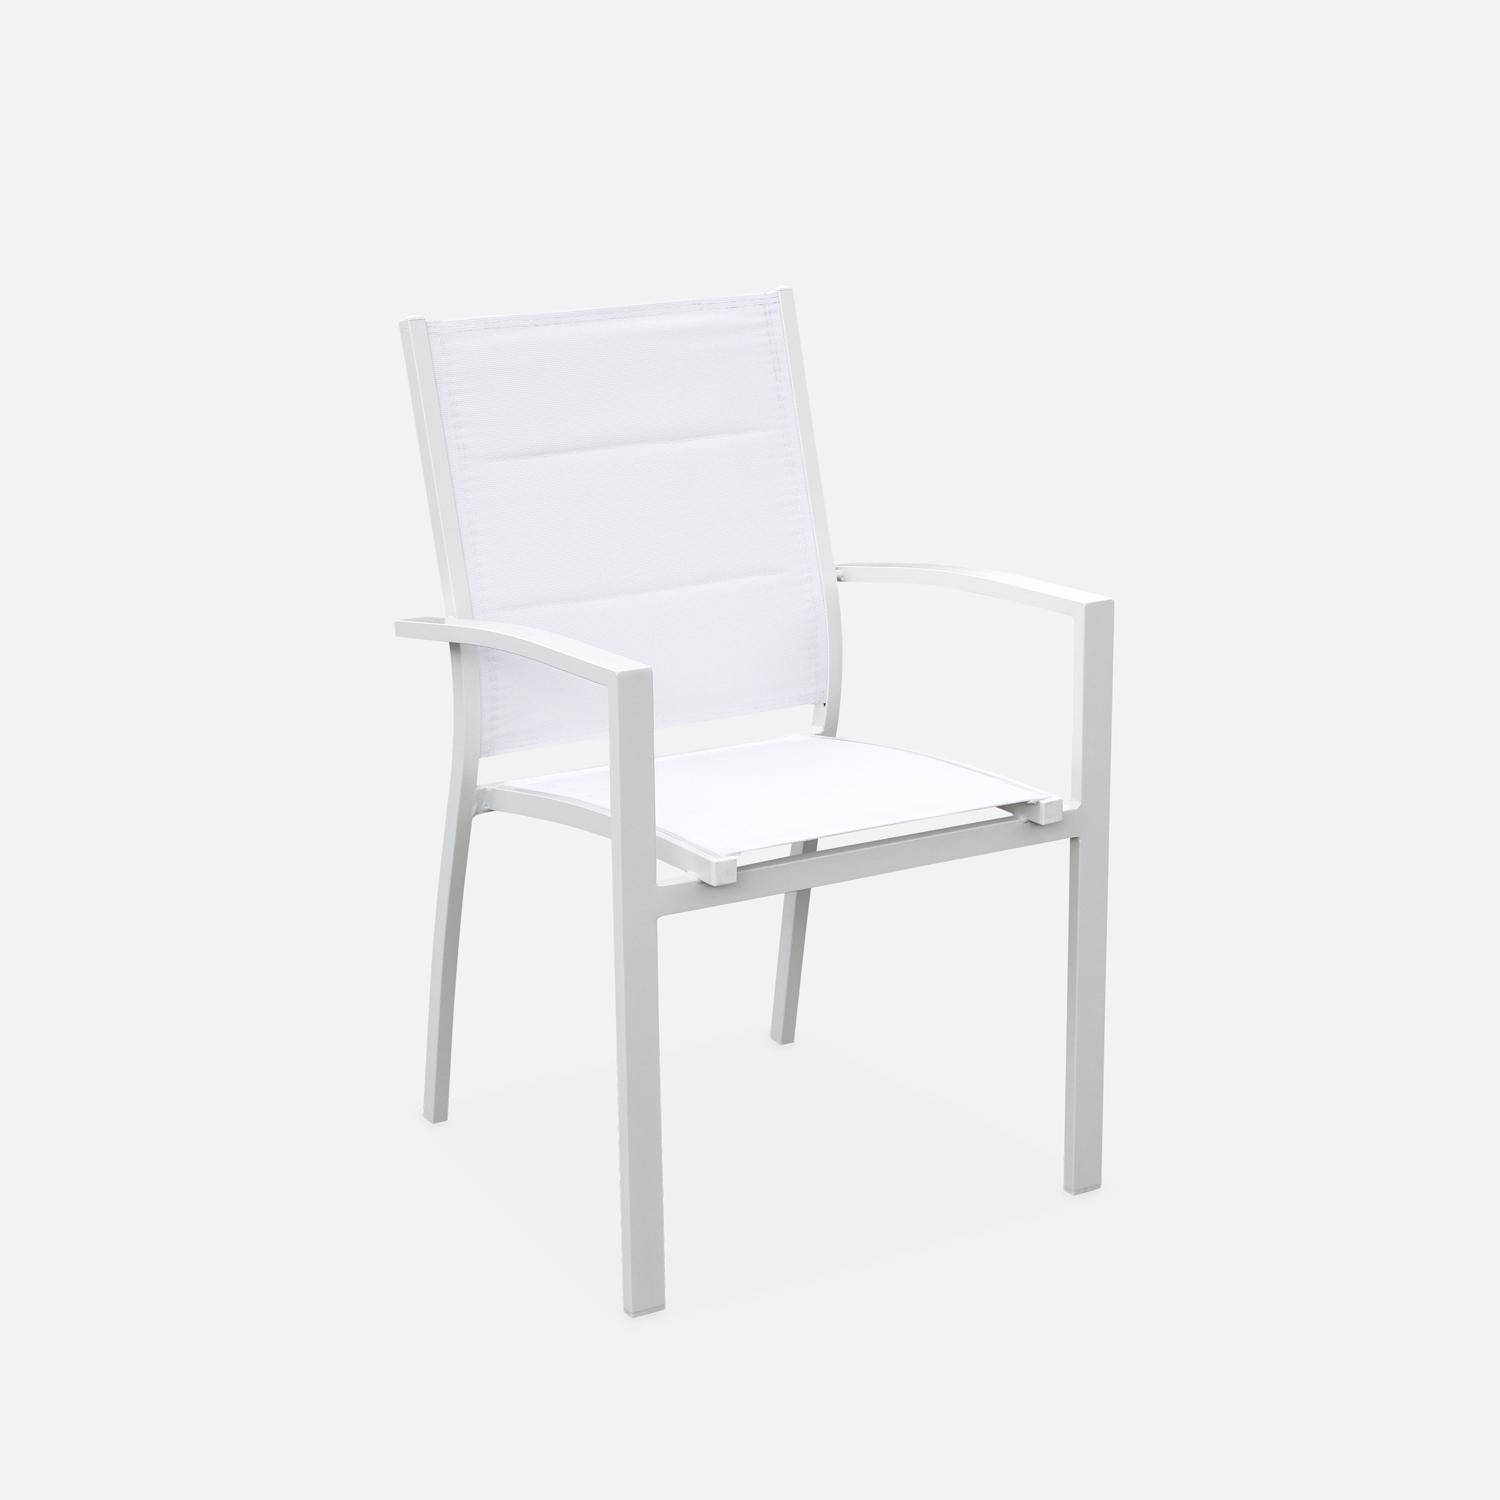 Chicago set, 1 tuintafel met verlengstuk, 8 stoelen uit aluminium en textileen Photo6